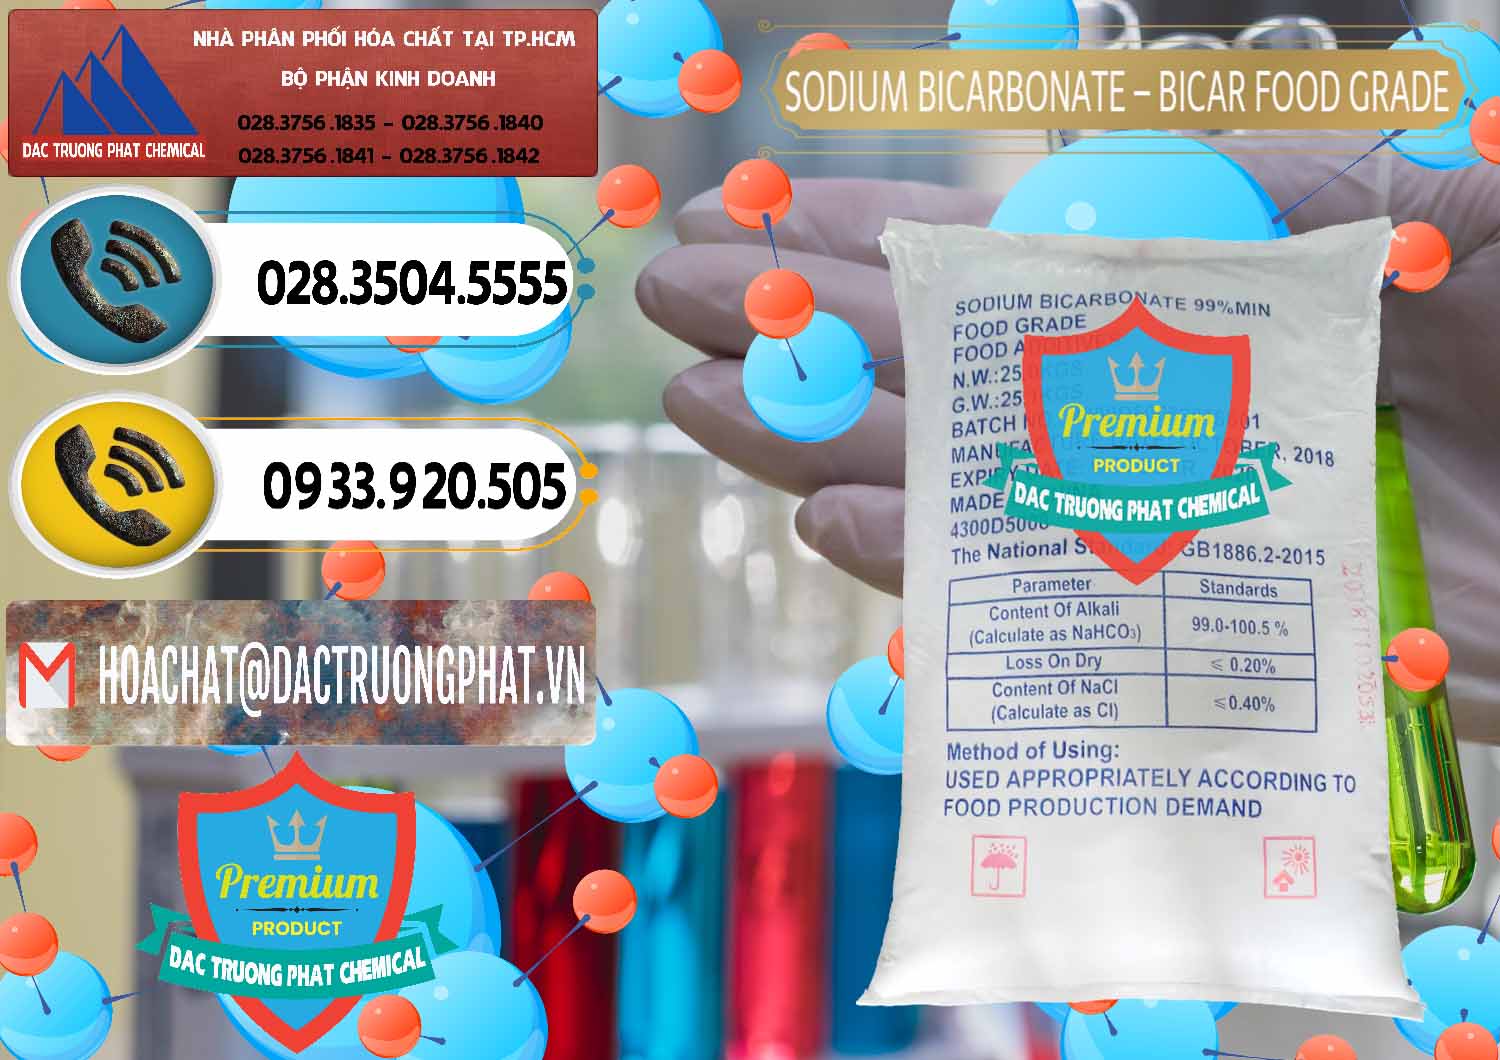 Cty chuyên bán ( phân phối ) Sodium Bicarbonate – Bicar NaHCO3 Food Grade Trung Quốc China - 0138 - Đơn vị bán - phân phối hóa chất tại TP.HCM - hoachatdetnhuom.vn